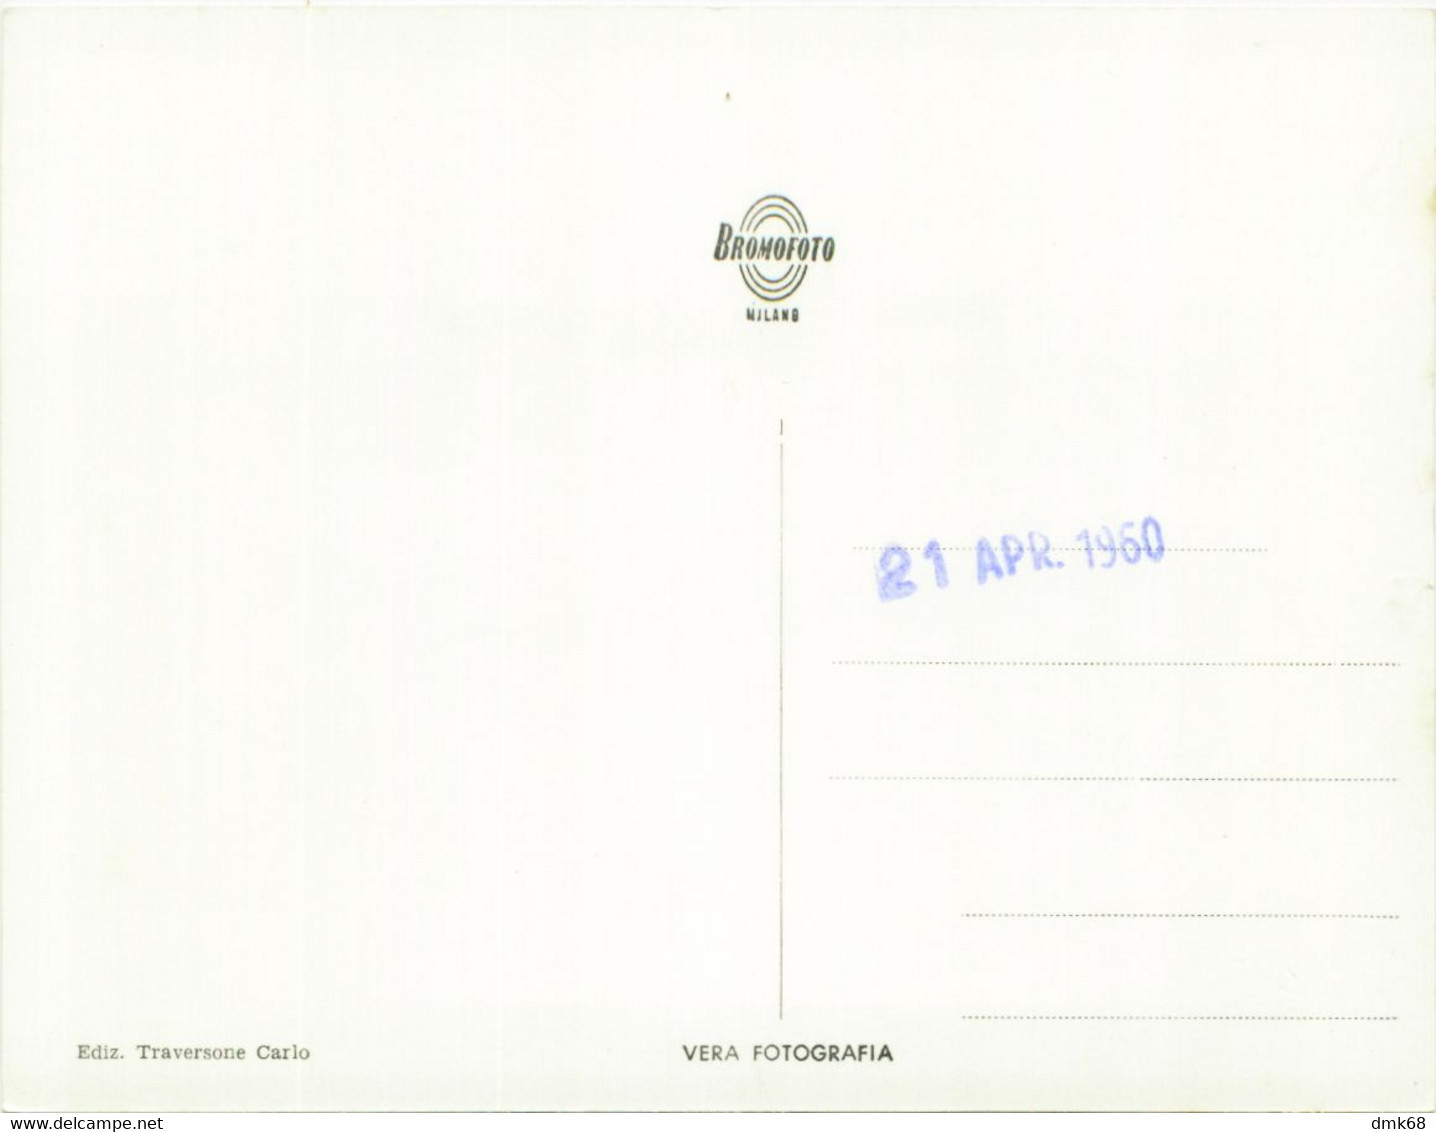 SWITZERLAND - VICOSOPRANO / BREGAGLIA - PANORAMA - EDIZ. TRAVERSONE - PROTOTYPE POSTCARD - 21 APR. 1960 (11724) - Bregaglia